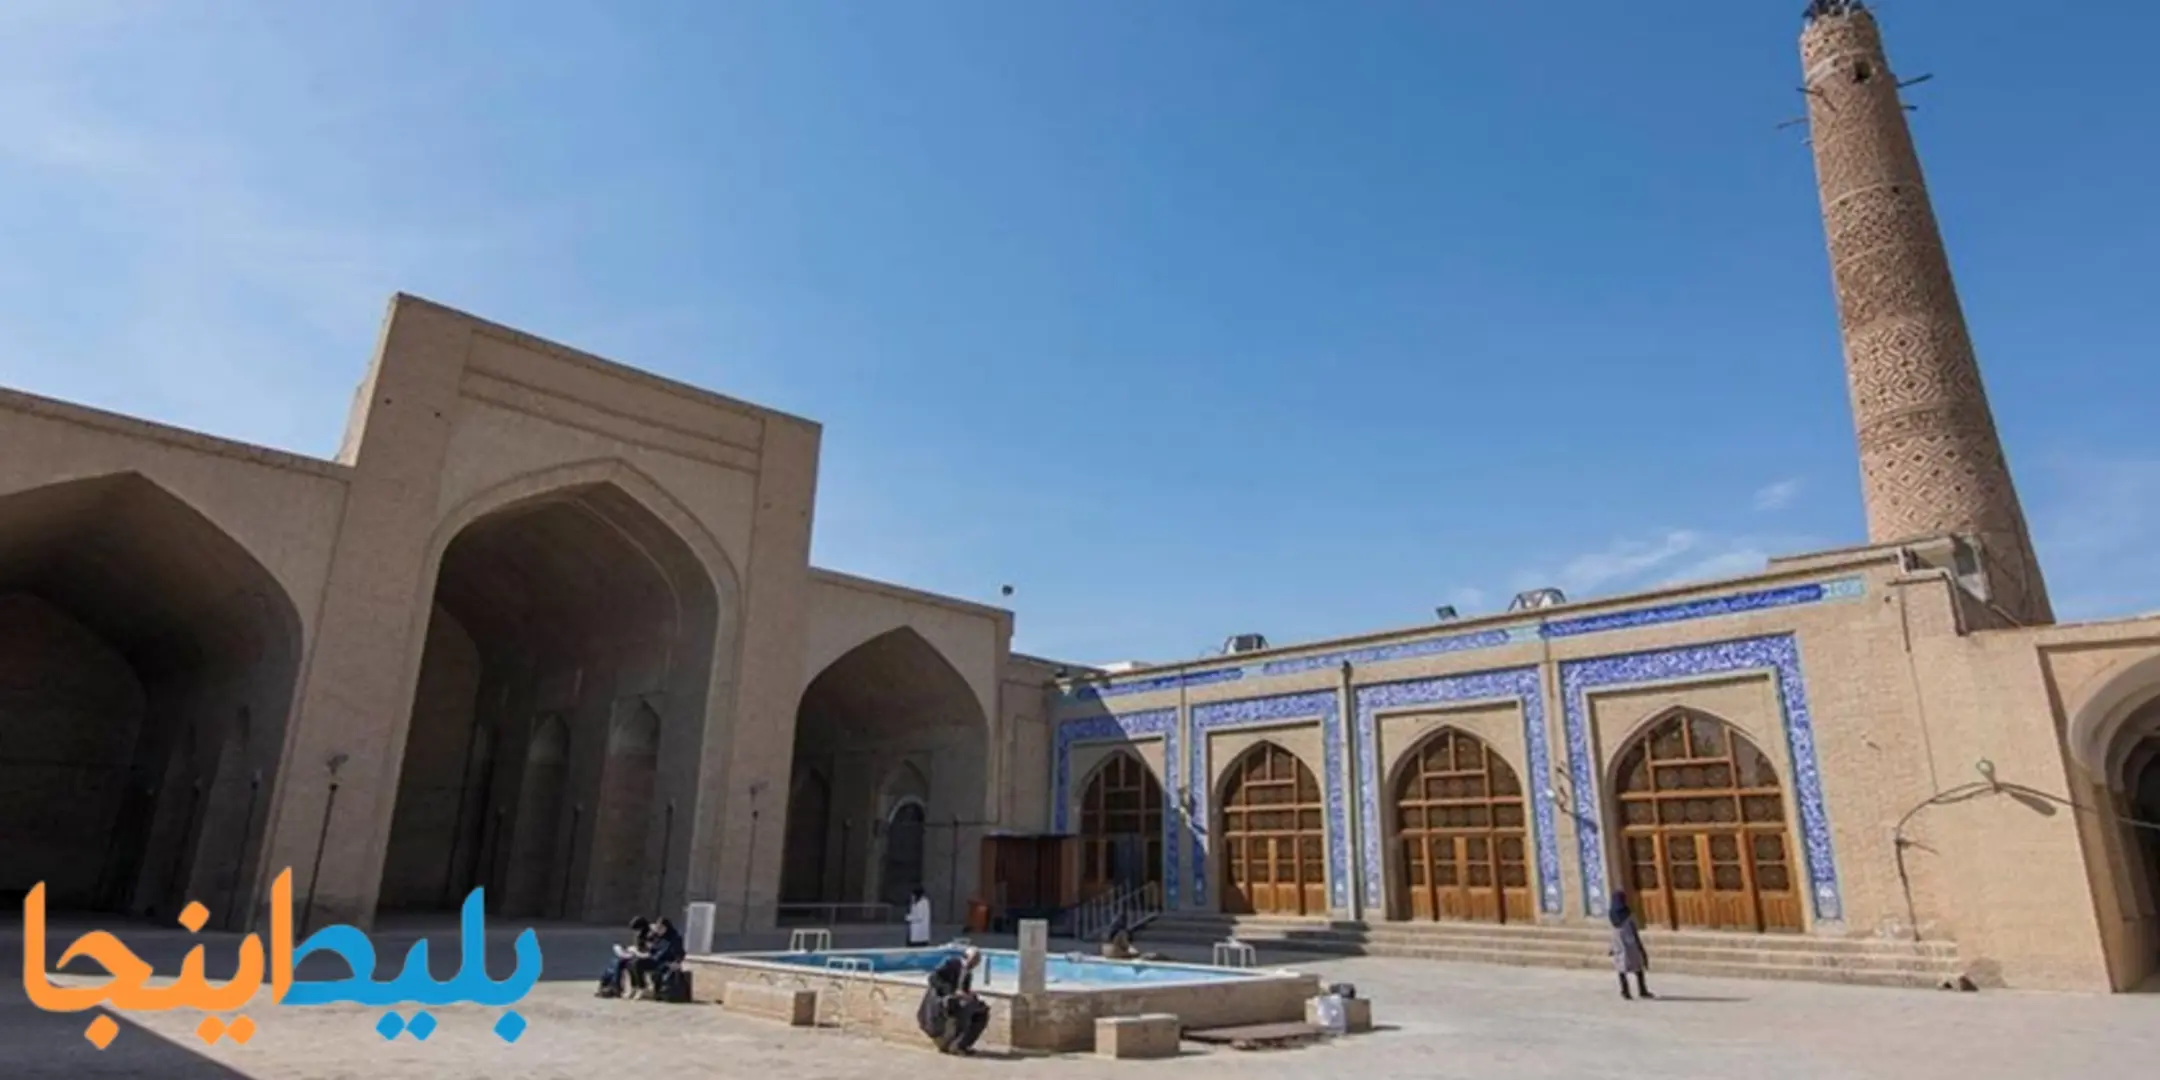 مسجد جامع از جاهای دیدنی دامغان